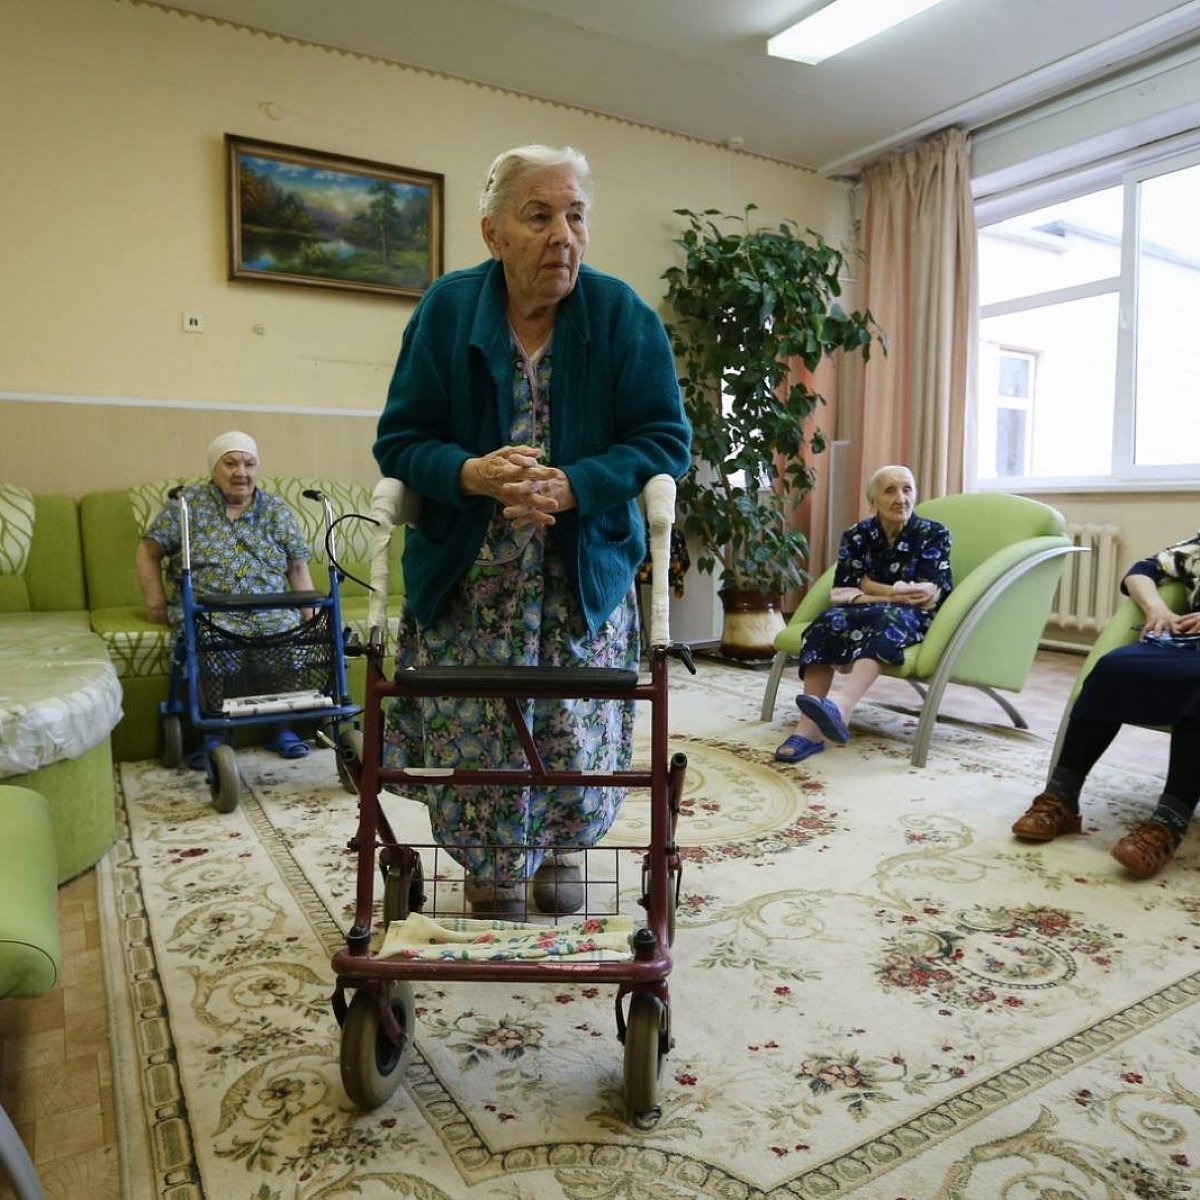 Какие условия в доме престарелых. Дом престарелых. Дом пенсионеров. Комната в доме престарелых. Пожилой человек в комнате.